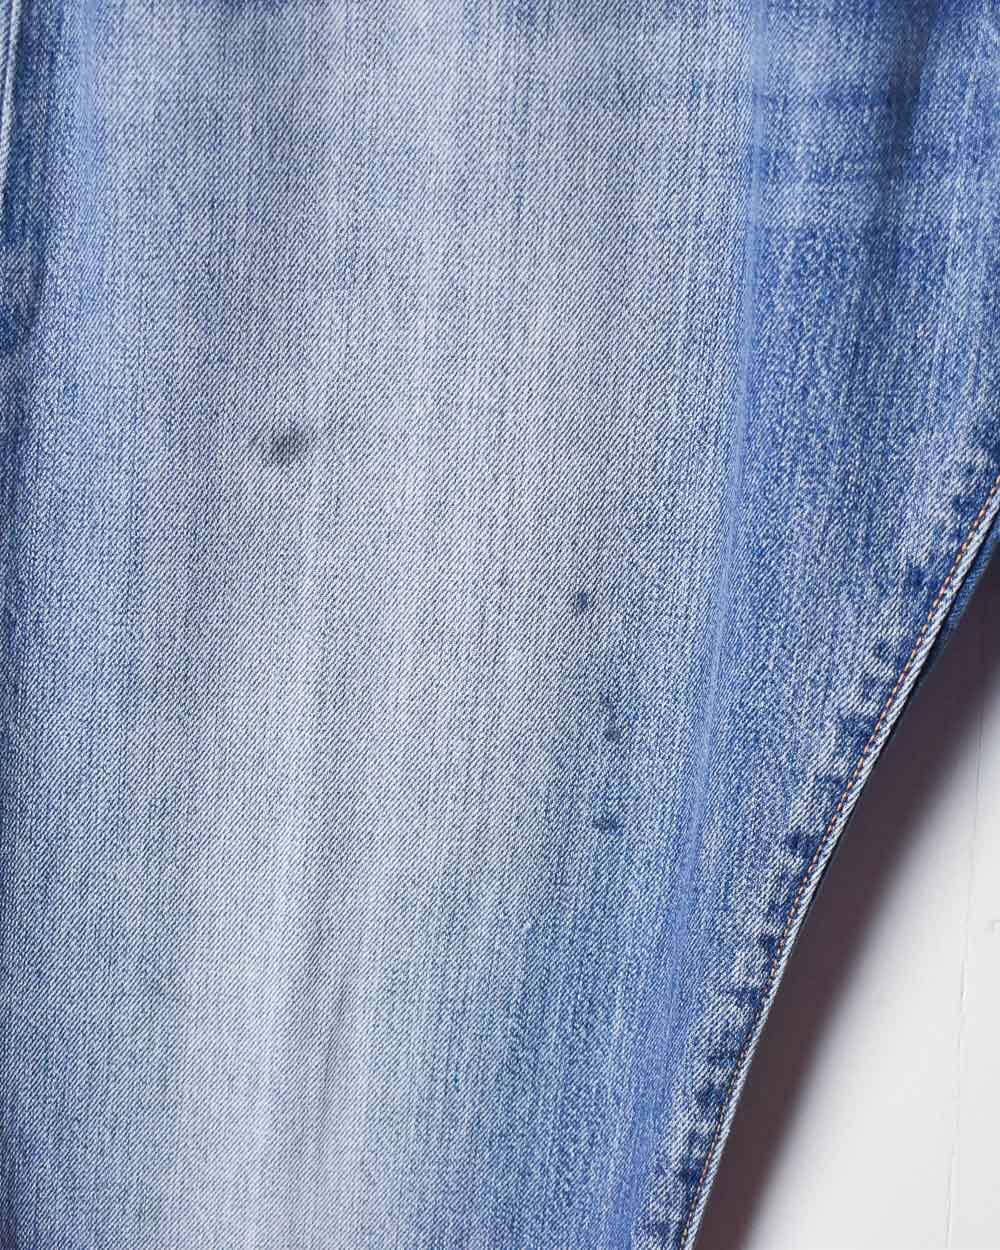 Blue Levi's 501 Jeans - W38 L33